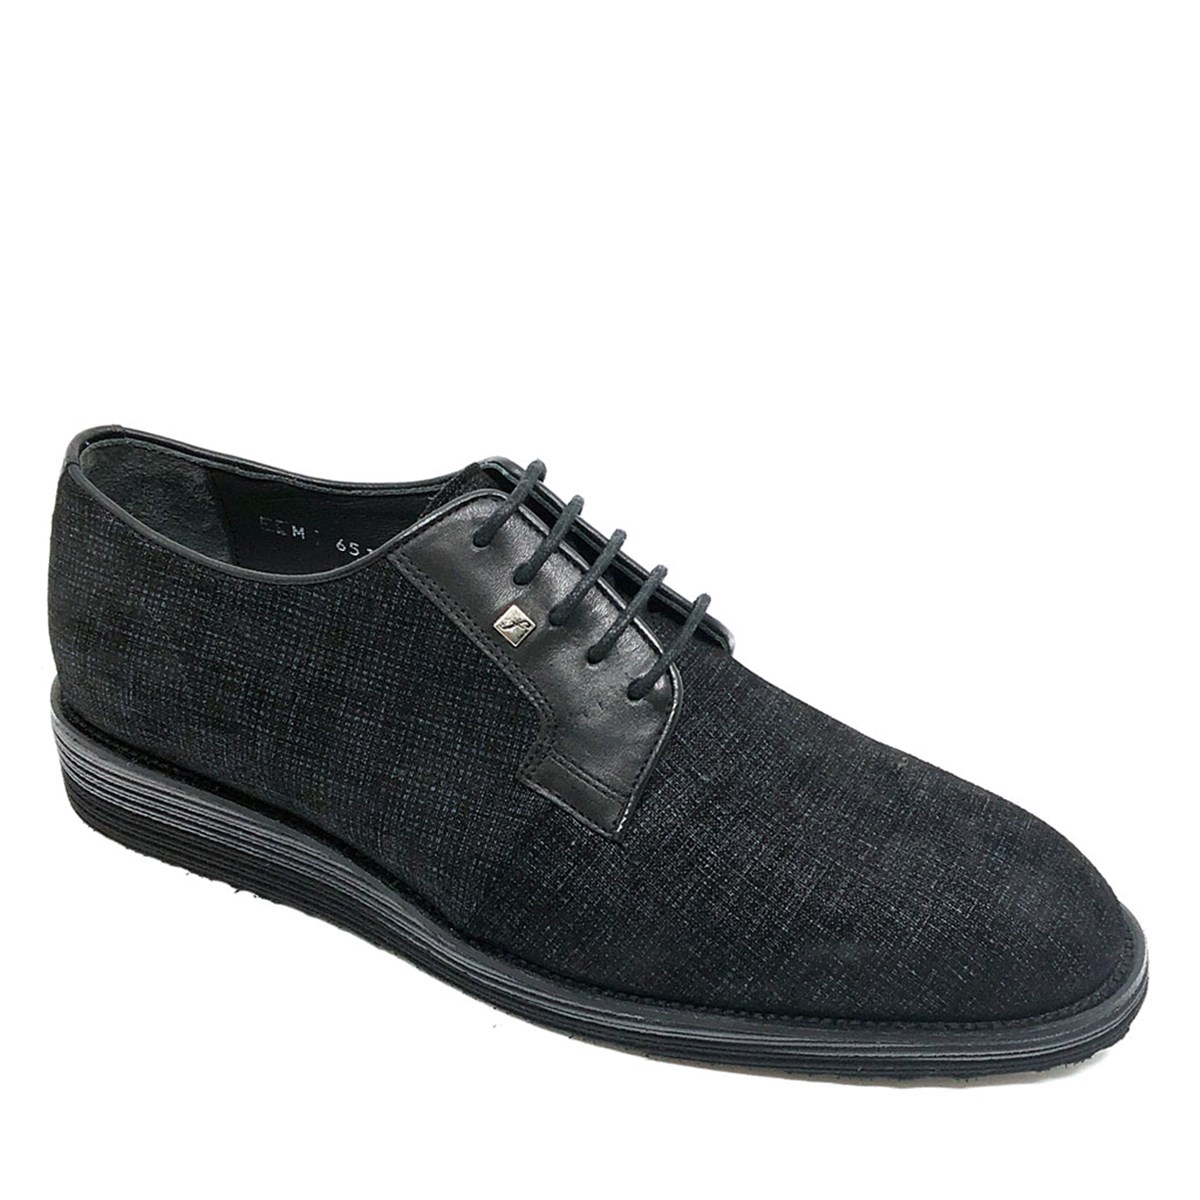 Fosco Siyah Tekstil Klasik Erkek Ayakkabı 1529 231 46